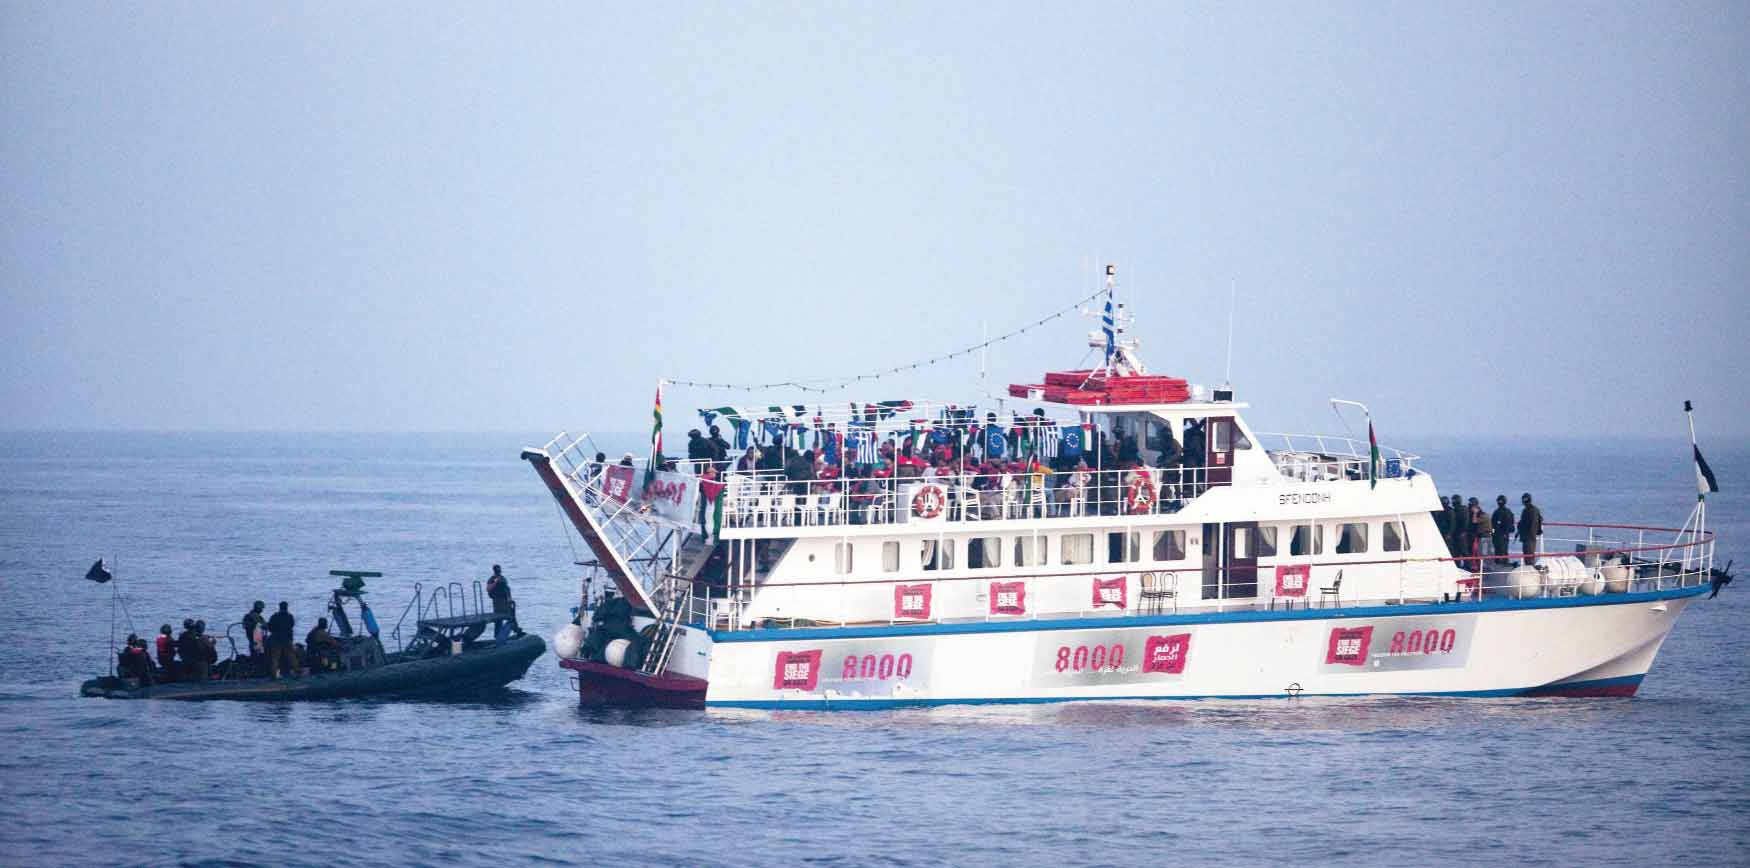 الإفراج عن ركاب سفينة "حرية " لكسر الحصار عن غزة Image